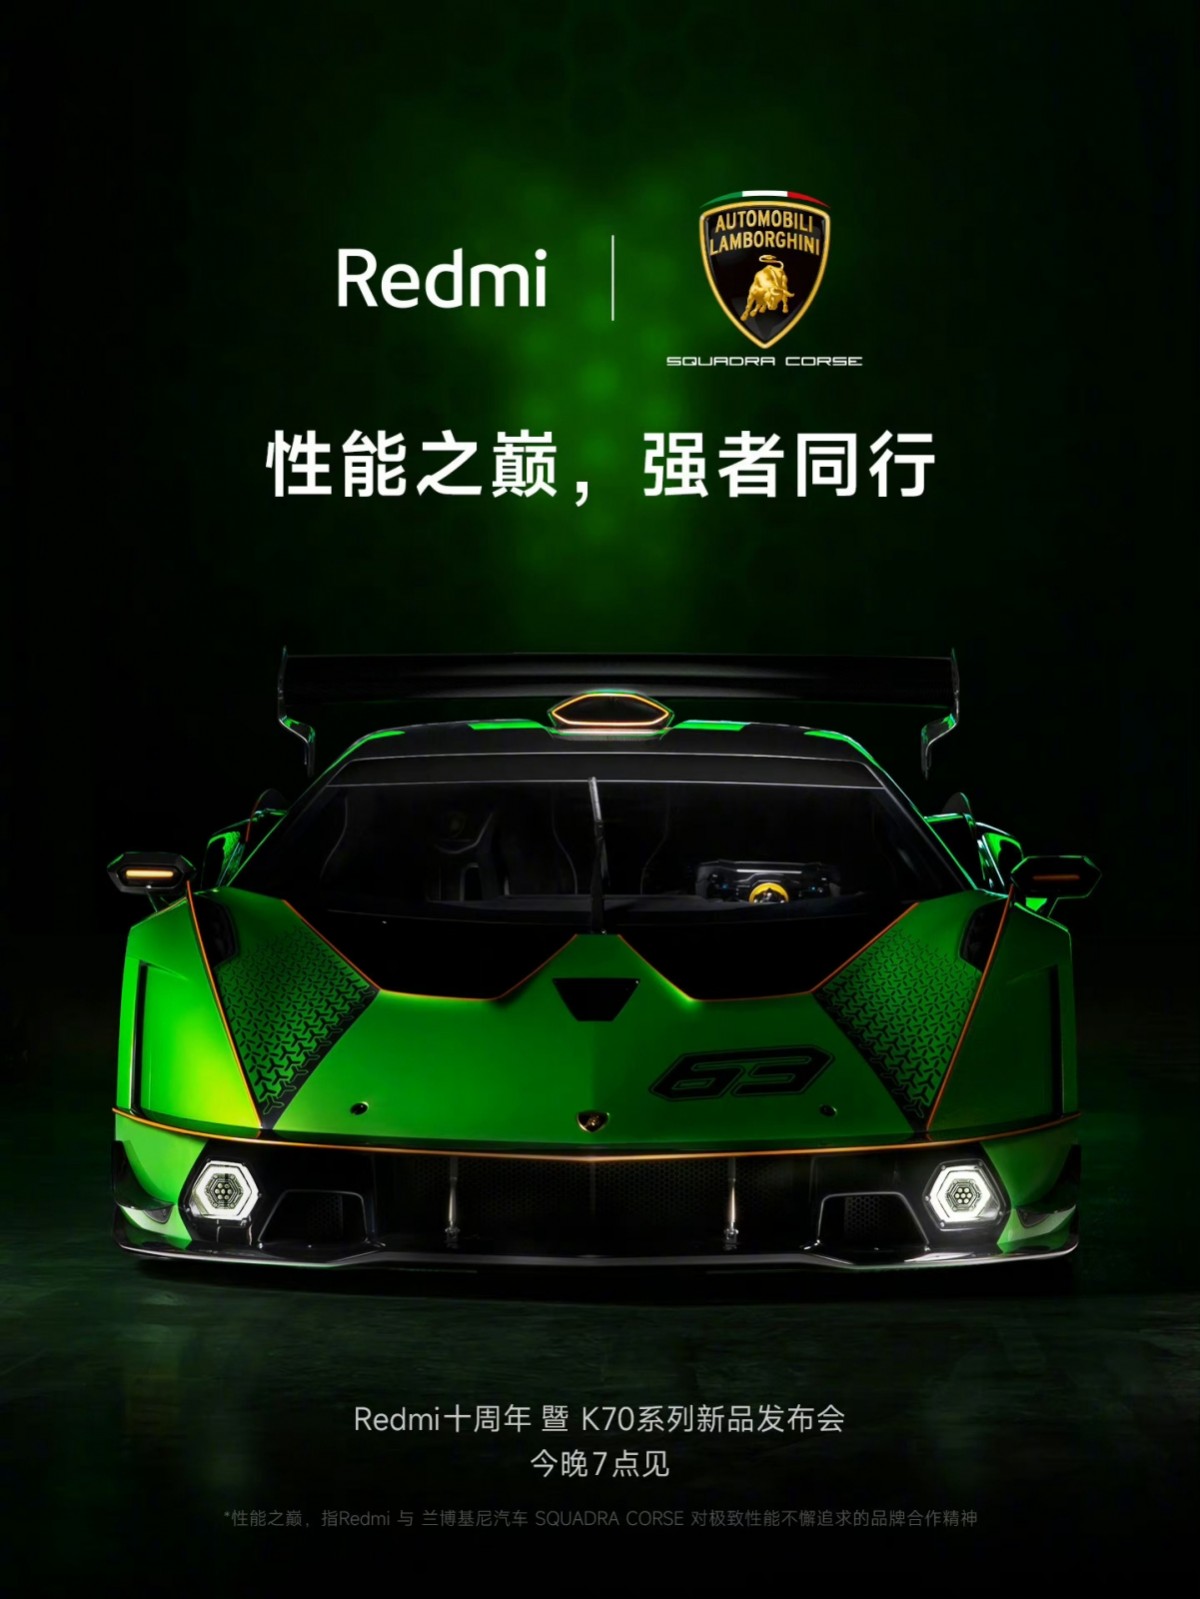 Redmi K70 Pro Automobili Lamborghini Squadra Corse comes with 24 GB RAM, 1 TB storage.